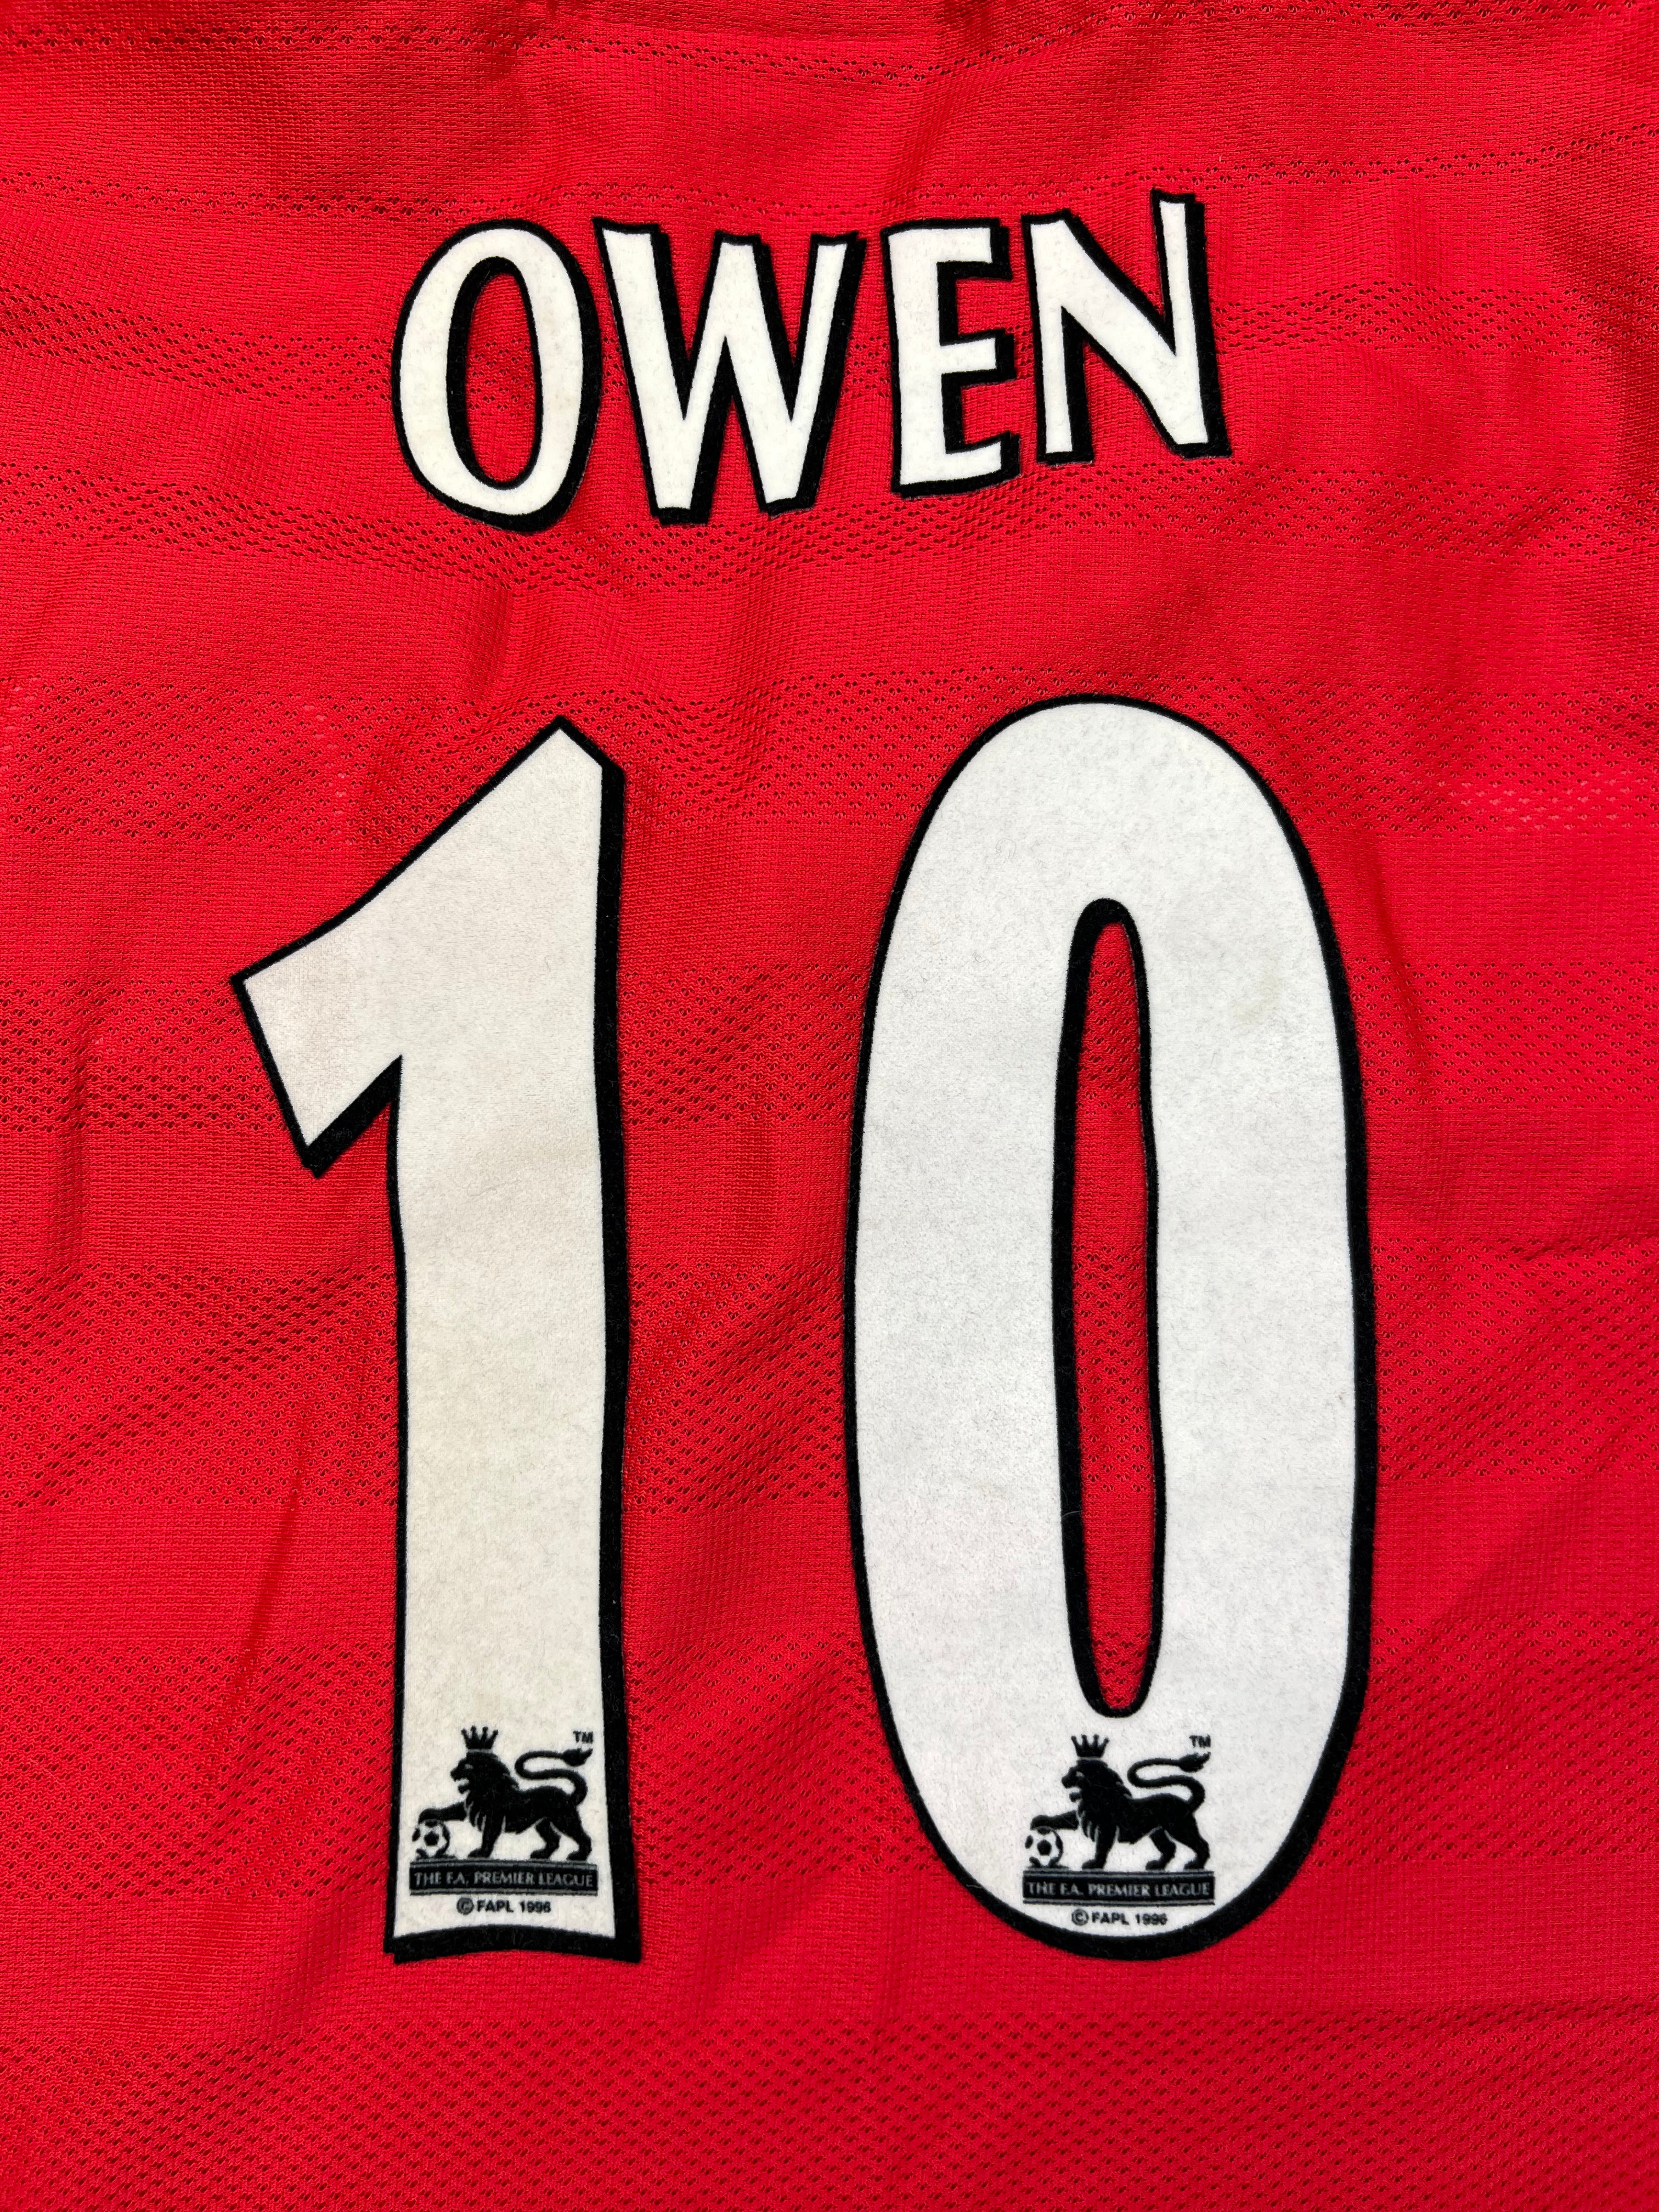 1998/00 Liverpool Domicile L/S Maillot Owen #10 (XL) 8.5/10